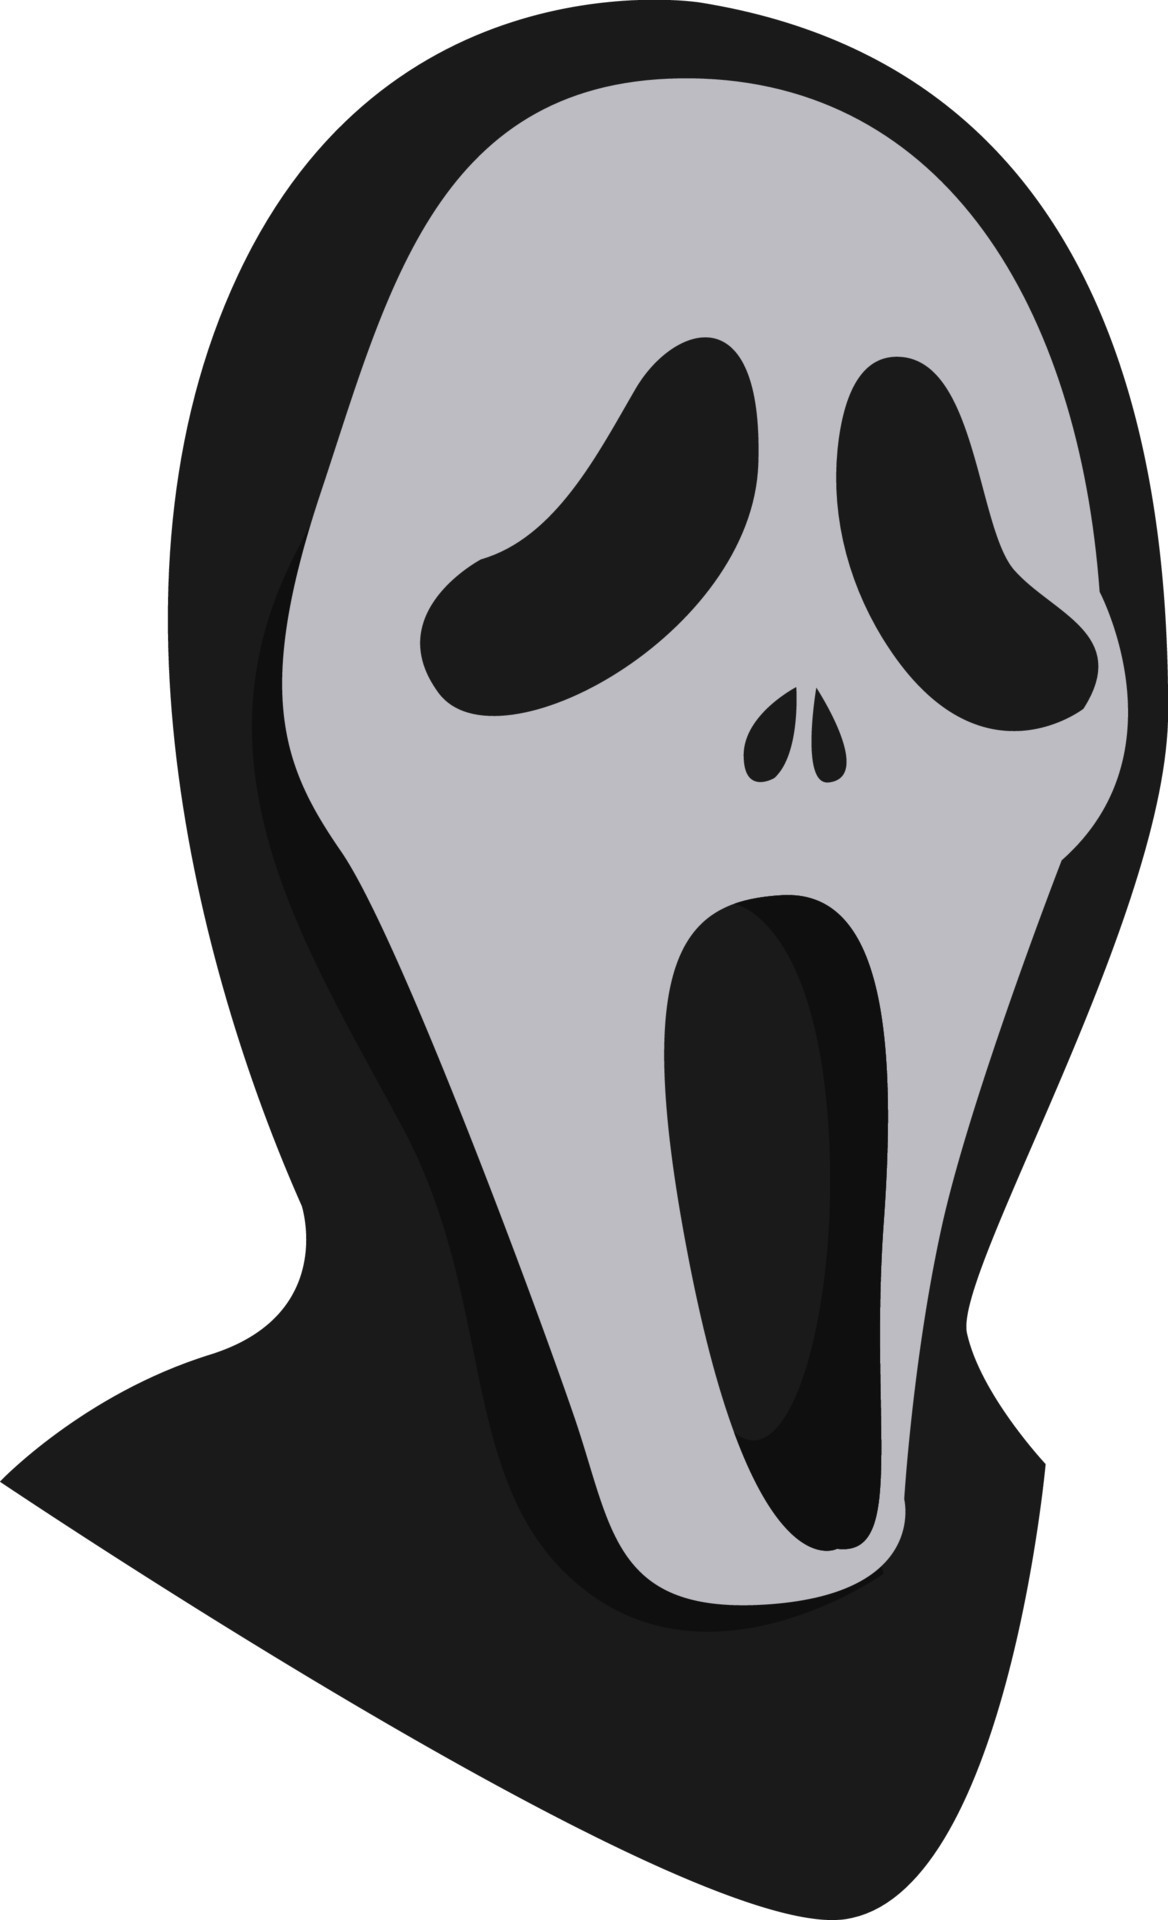 Scream mask, illustration, vector on white background. 13509983 Vector ...